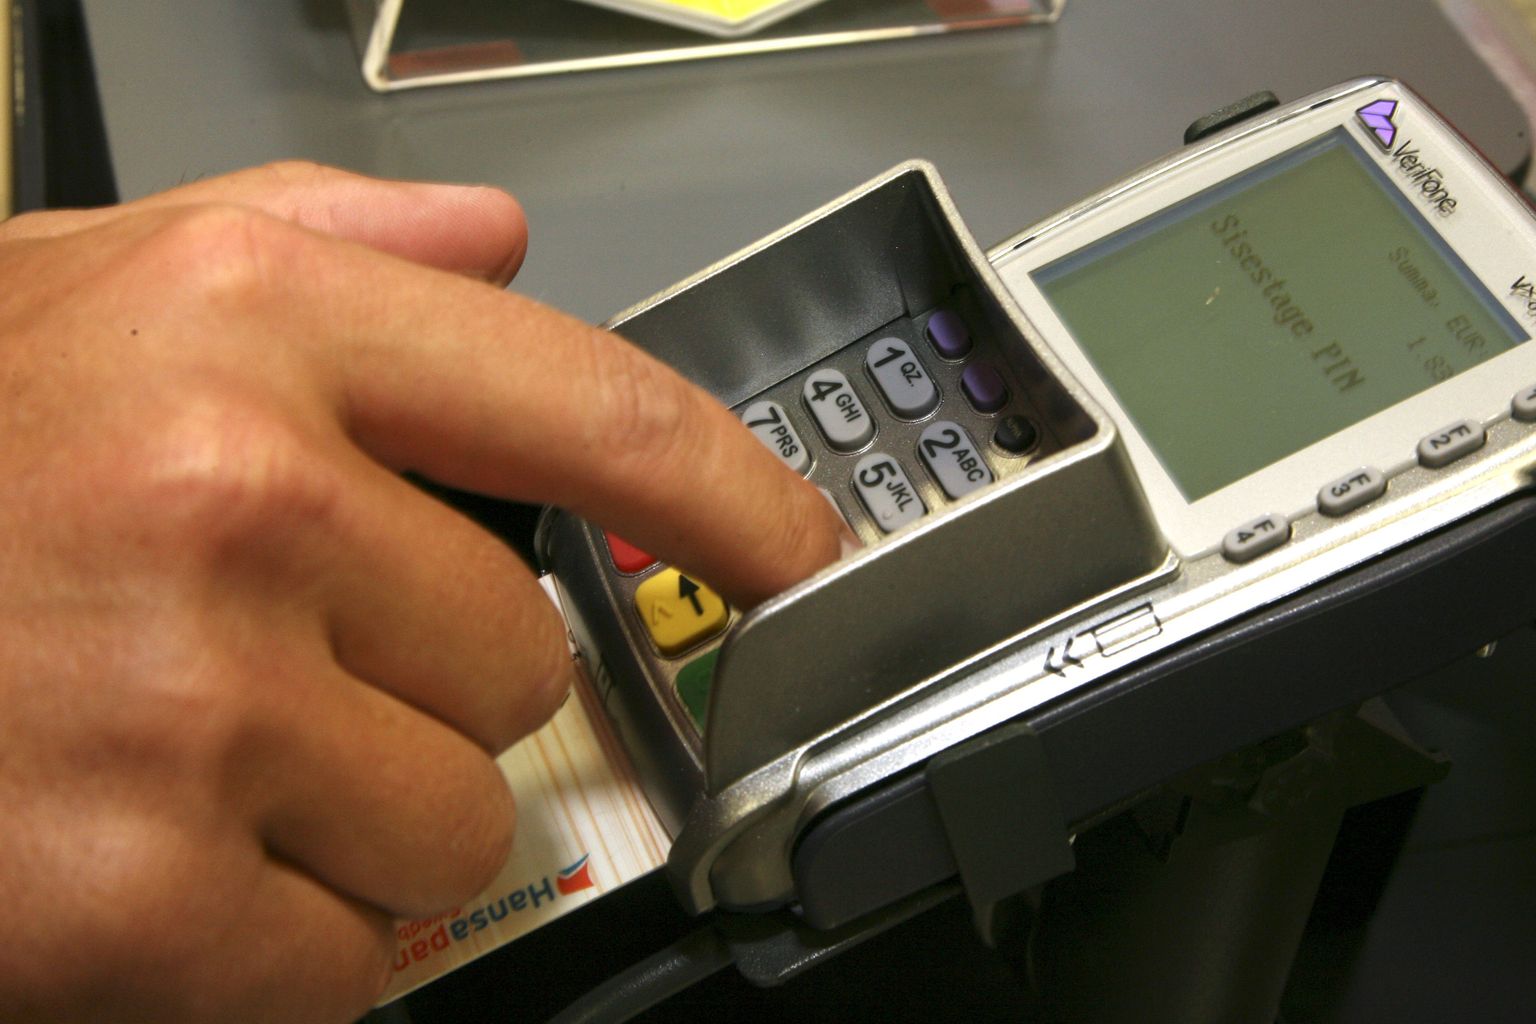 Välismaal tasub jälgida, et kaarditerminali või pangaautomaati pole kaardi andmete kopeerimise eesmärgil muudetud.